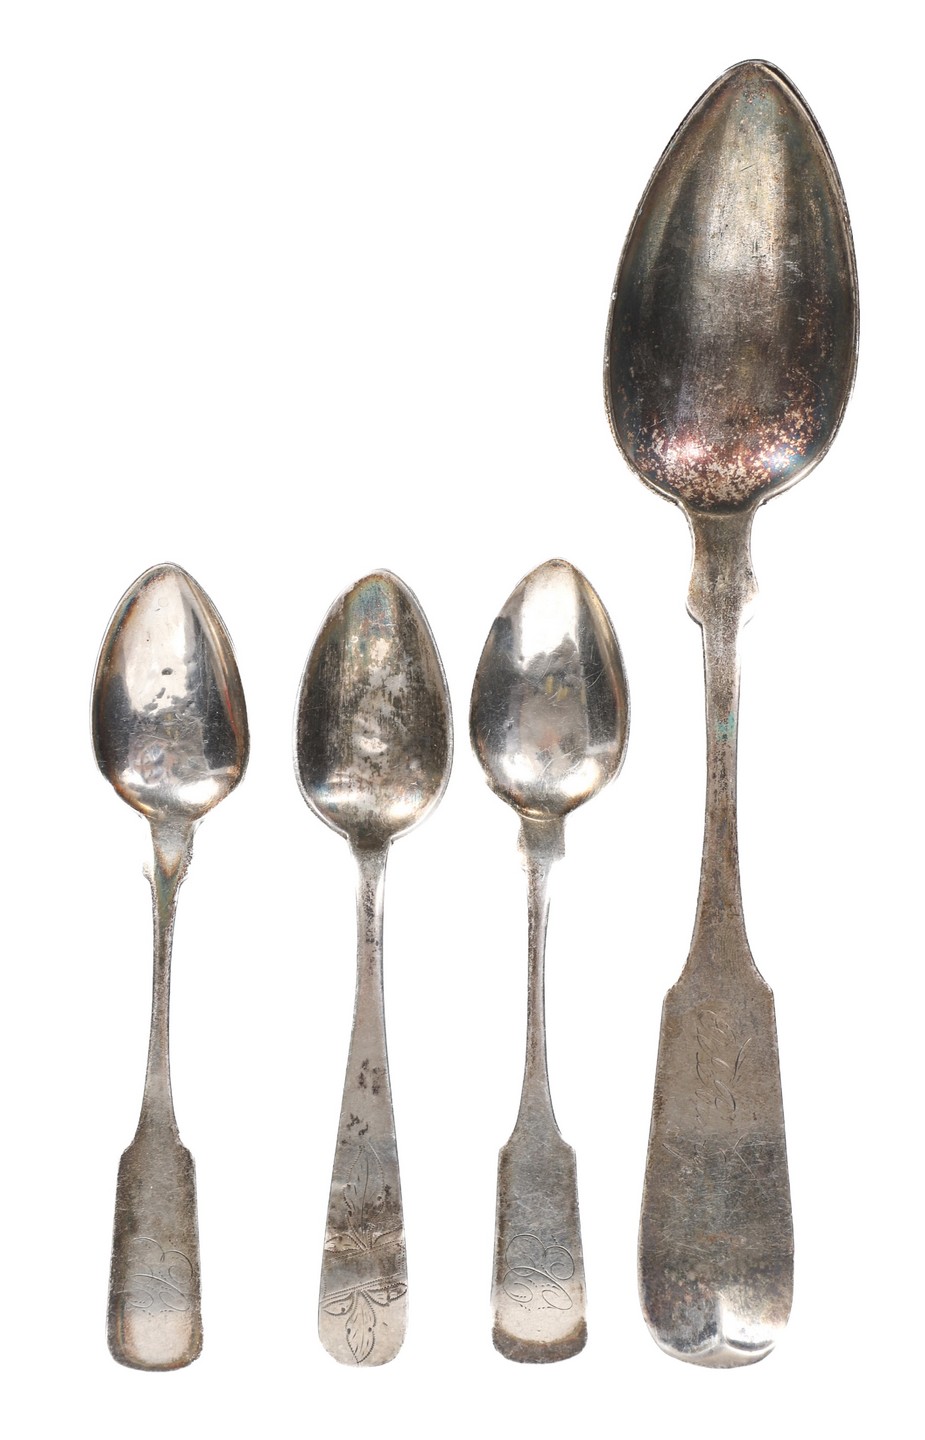  4 Coin silver spoons 2 735 TO  2e0957